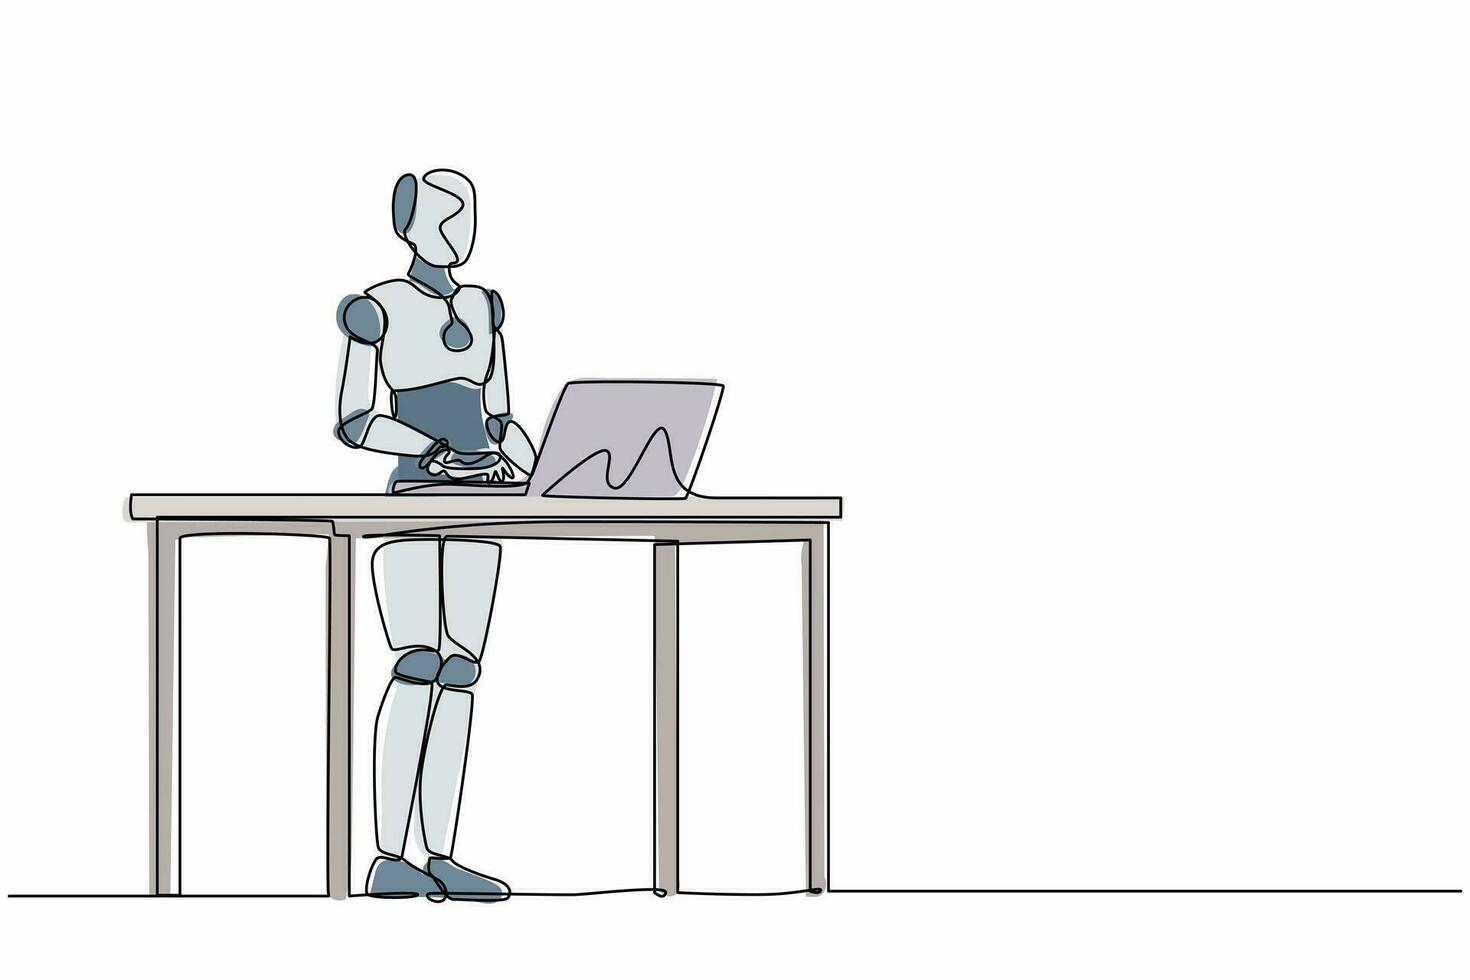 une seule ligne continue dessinant un robot intelligent debout et travaillant derrière le bureau. intelligence artificielle robotique moderne. industrie de la technologie électronique. une ligne dessiner illustration vectorielle de conception graphique vecteur